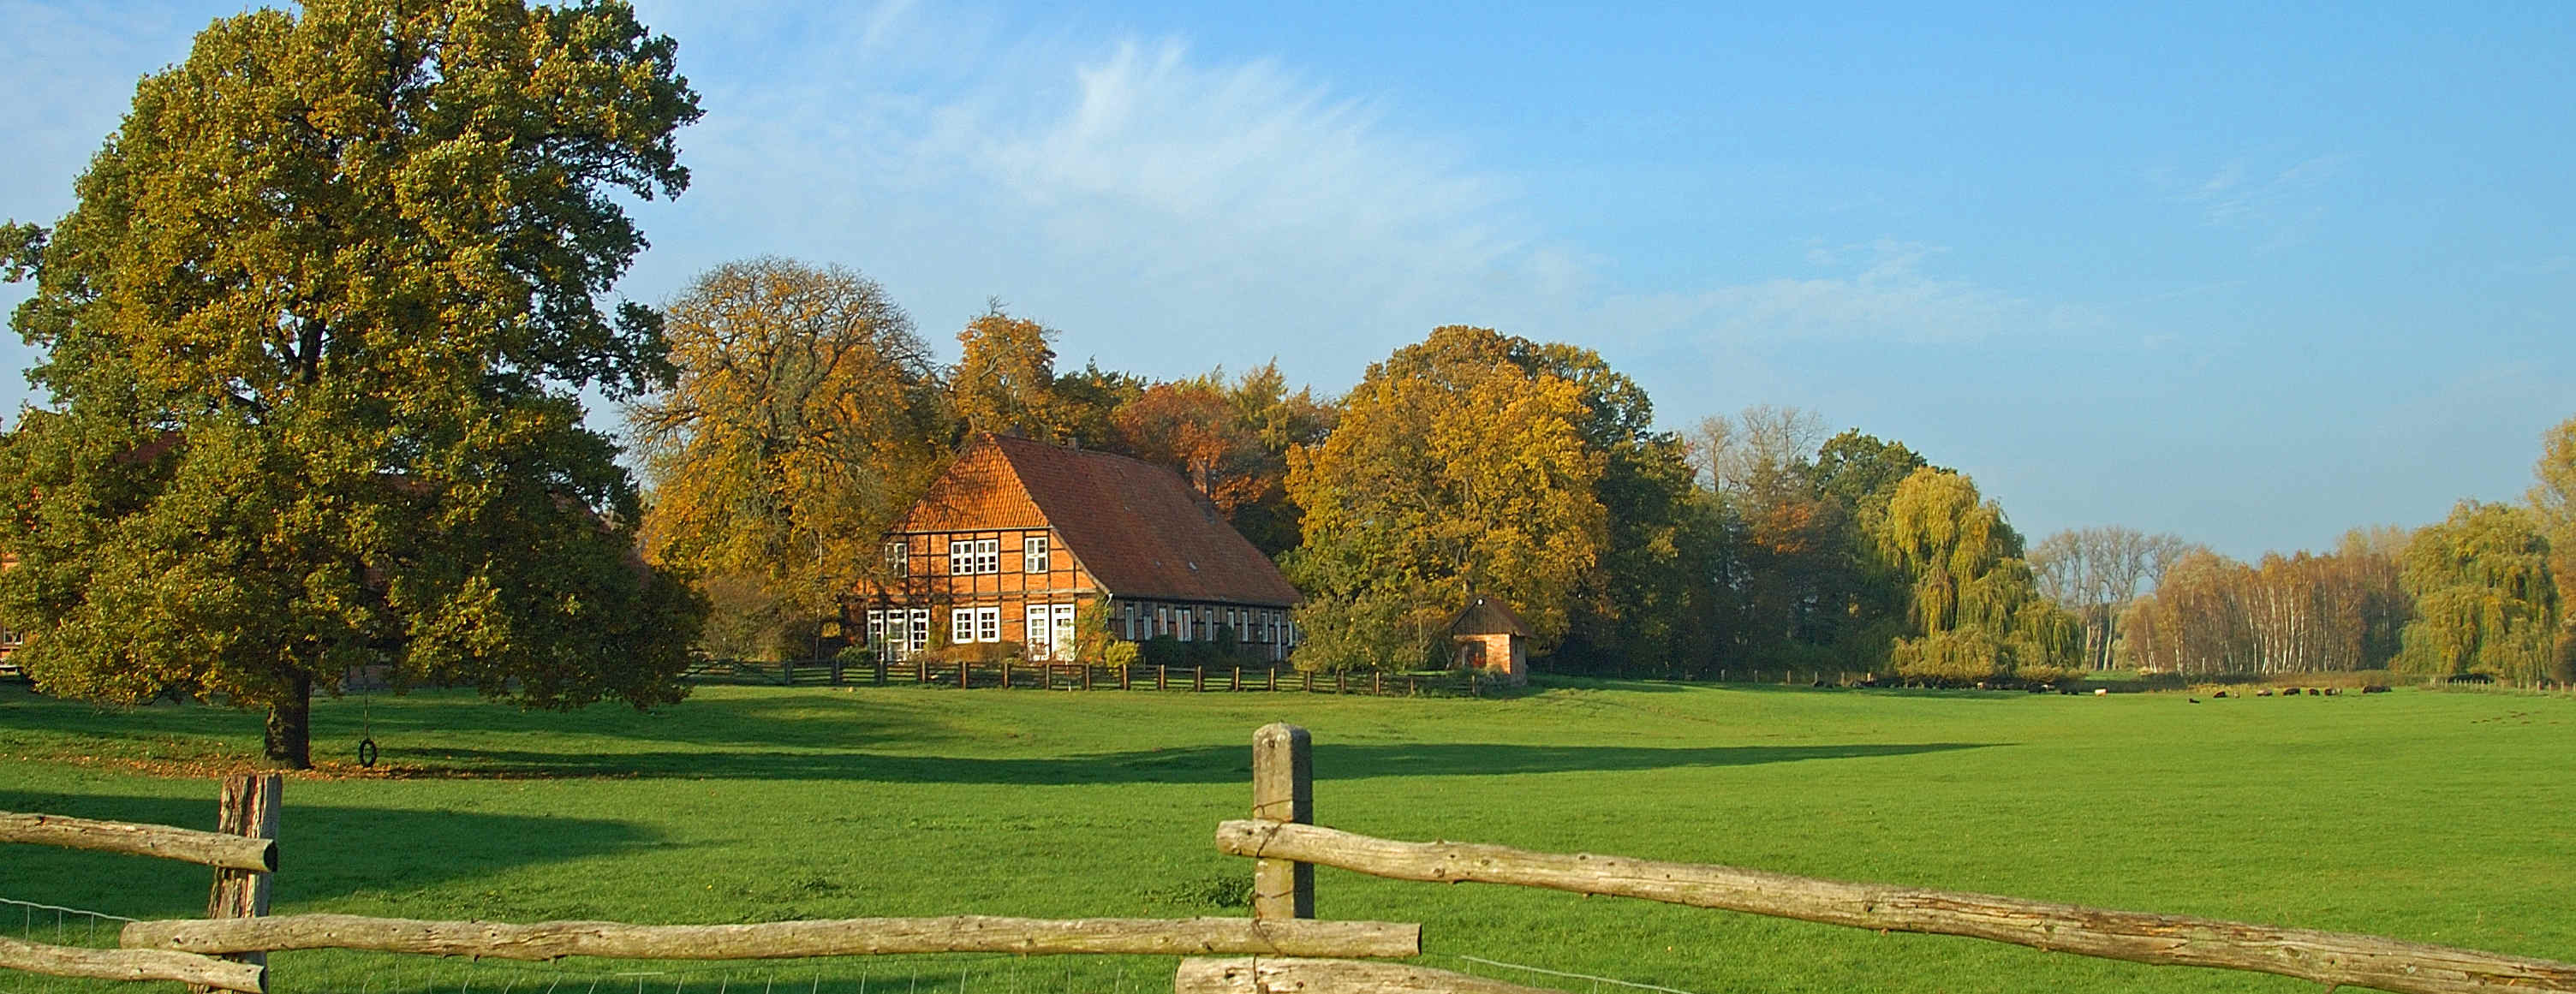 Panoramaansicht einer Weide mit einem ländlichen Haus im Hintergrund